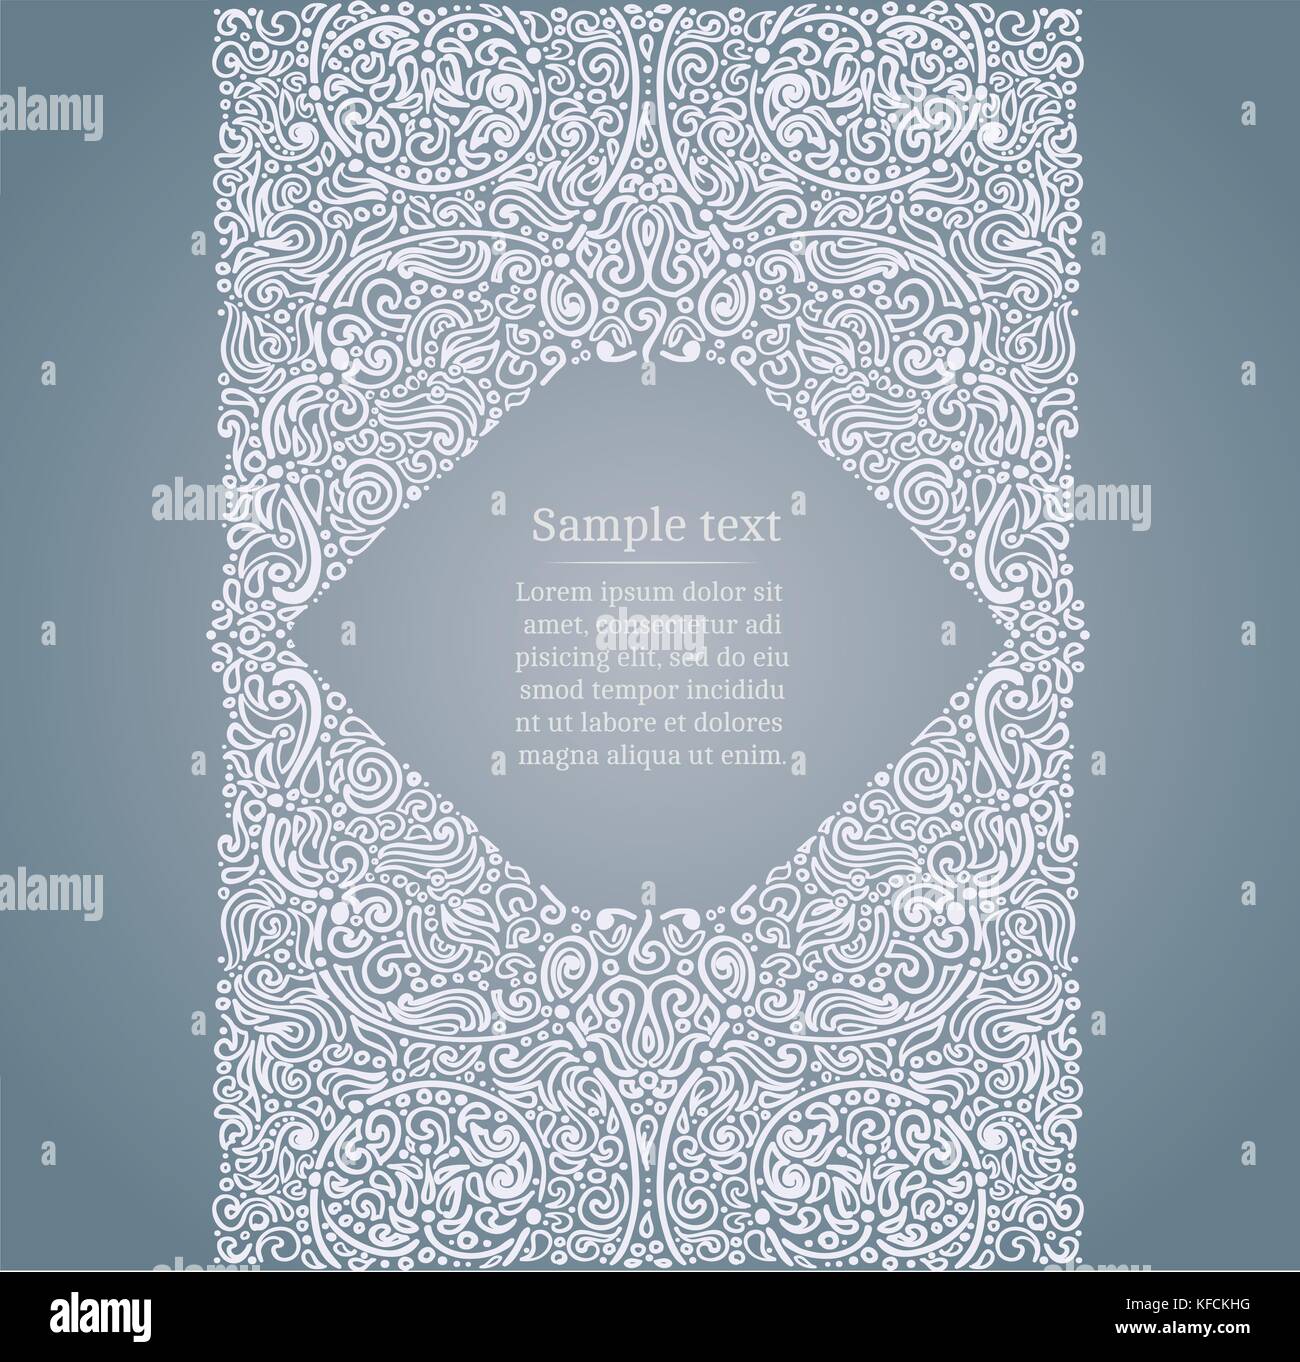 Vektor orientalischen Hintergrund mit verzierten Rand und Vignette für Text Stock Vektor